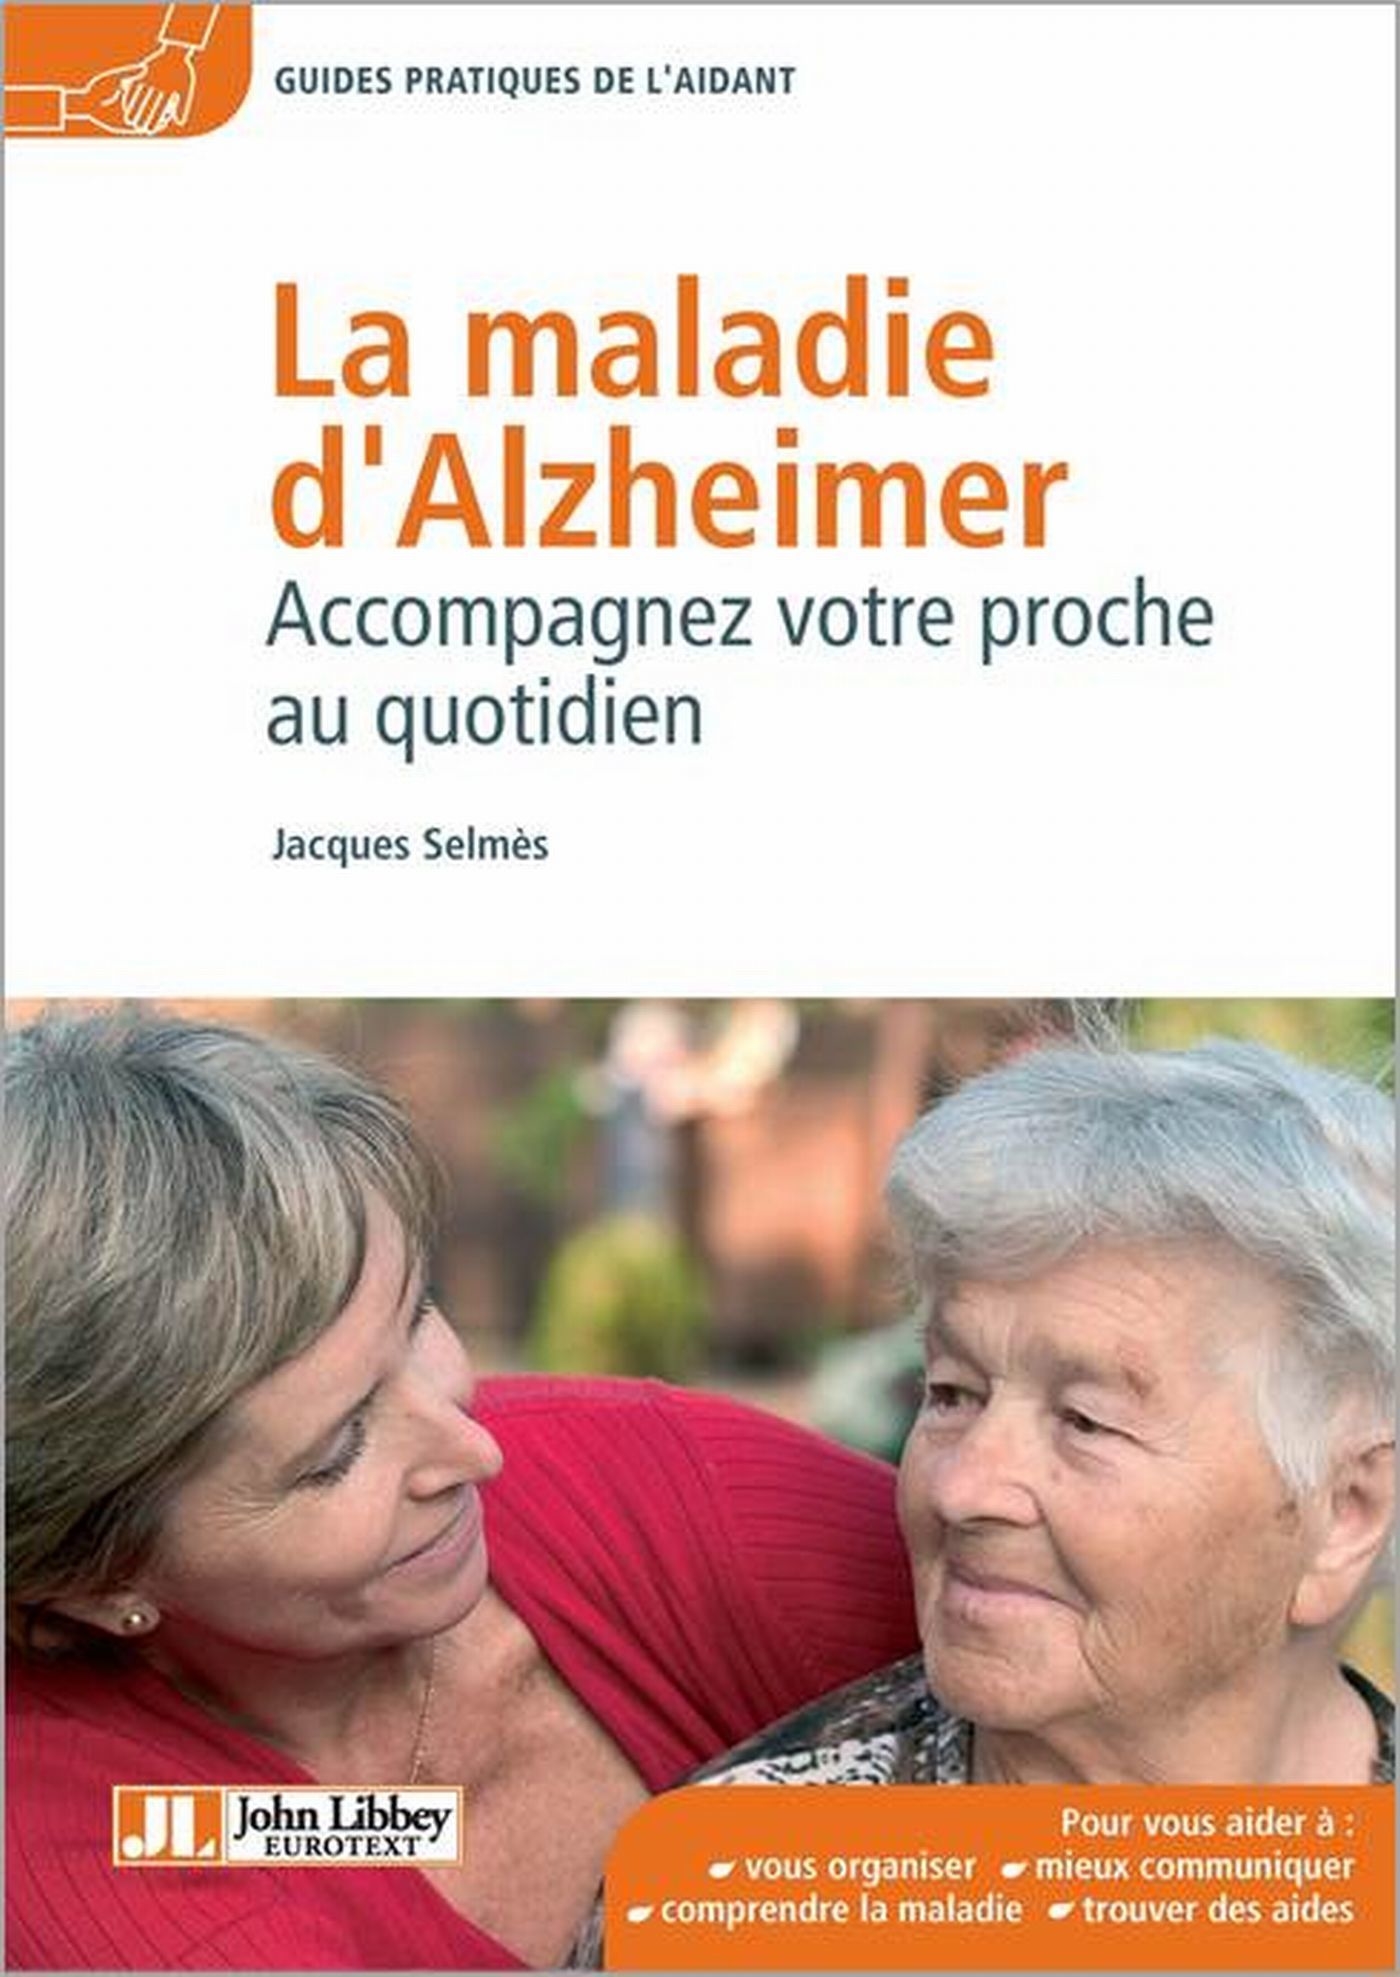 Guide complet sur la Maladie d'Alzheimer